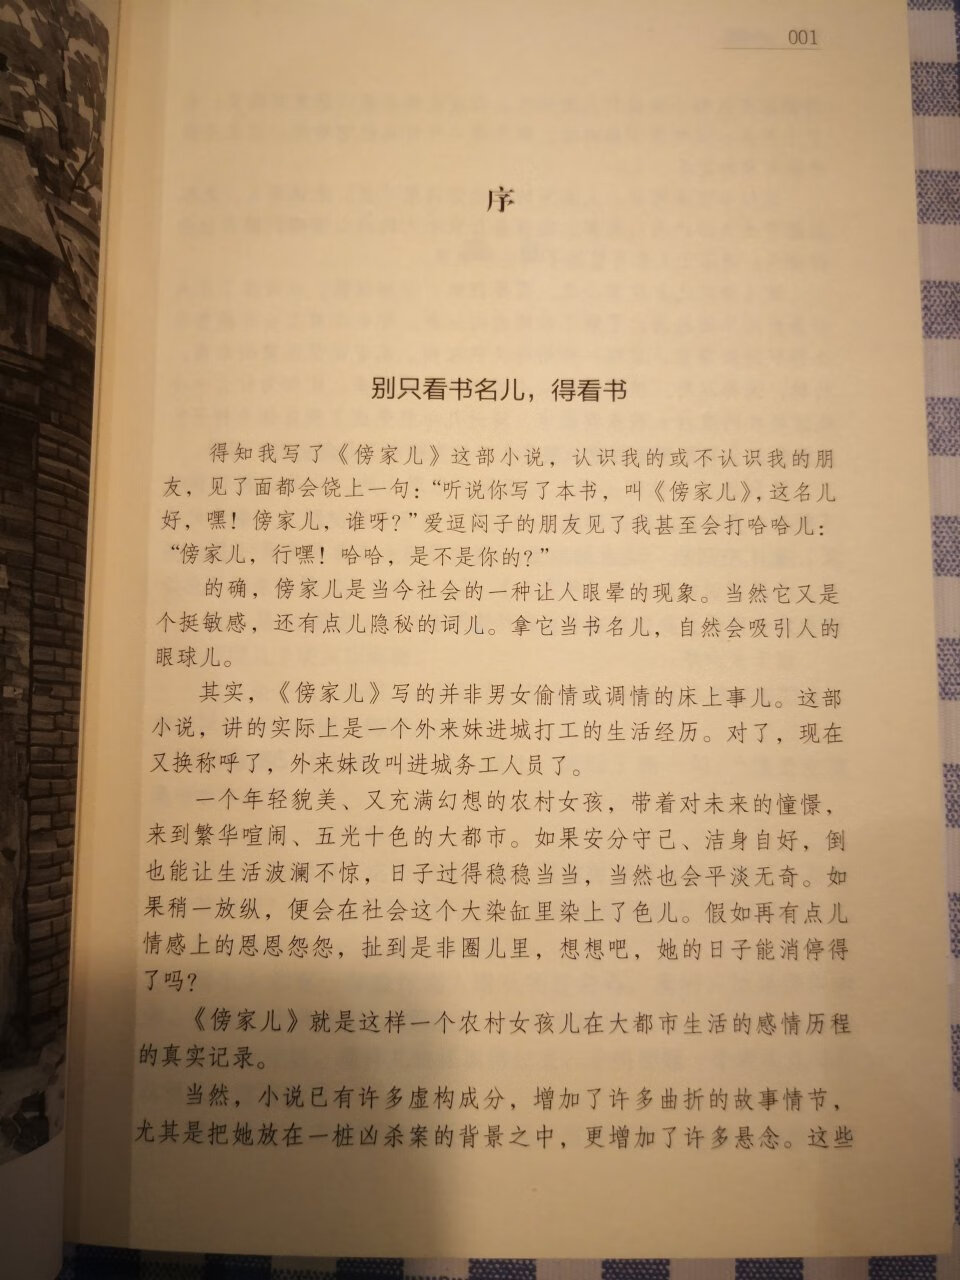 最喜欢的作家之一，京味儿十足，如今老北京文化逐渐淡化，小说引人入胜，勾起了许多儿时的记忆。我爱我的大北京。